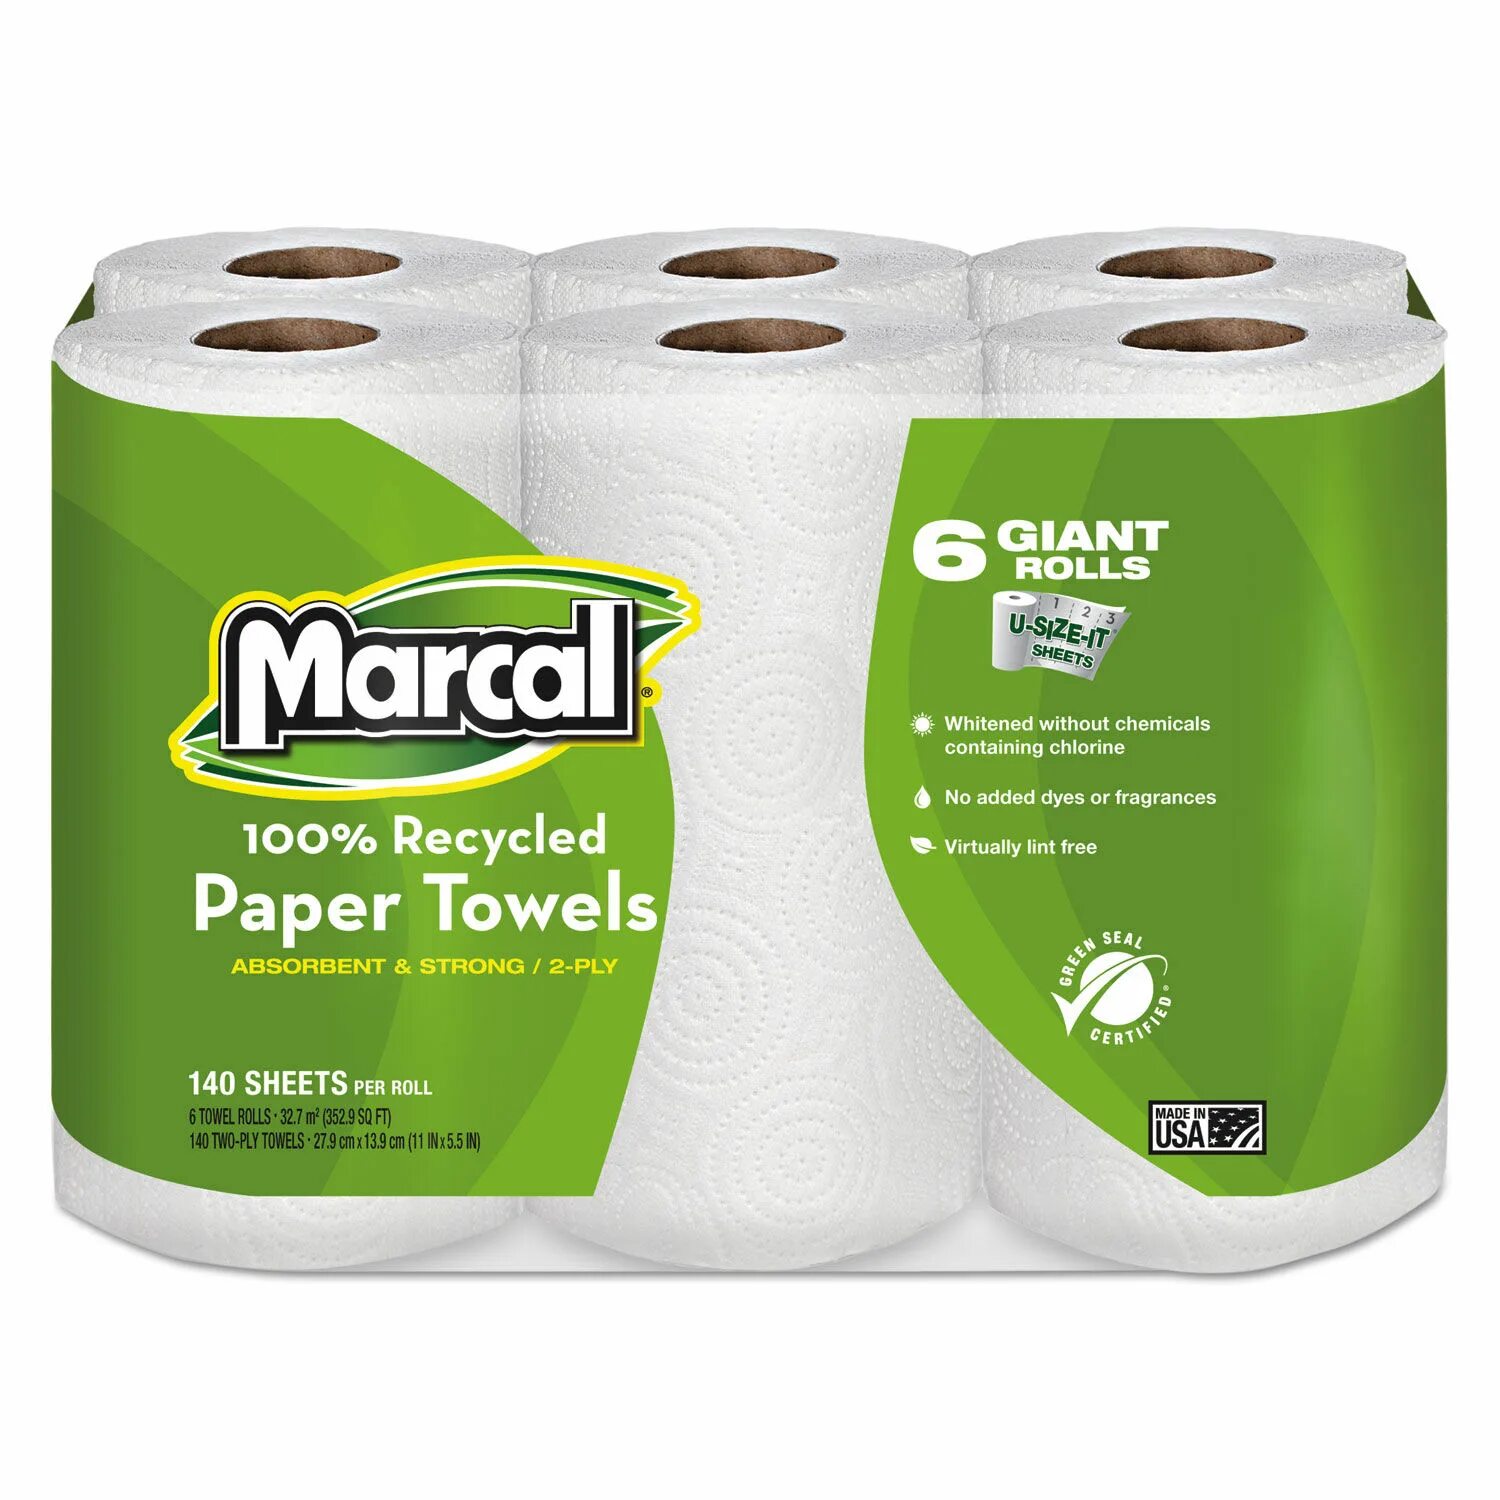 Paper Towel бумажные полотенца. Бумажные полотенца grass. Бумажные полотенца для СТО. Полотенца бумажные рулонные Maxi.